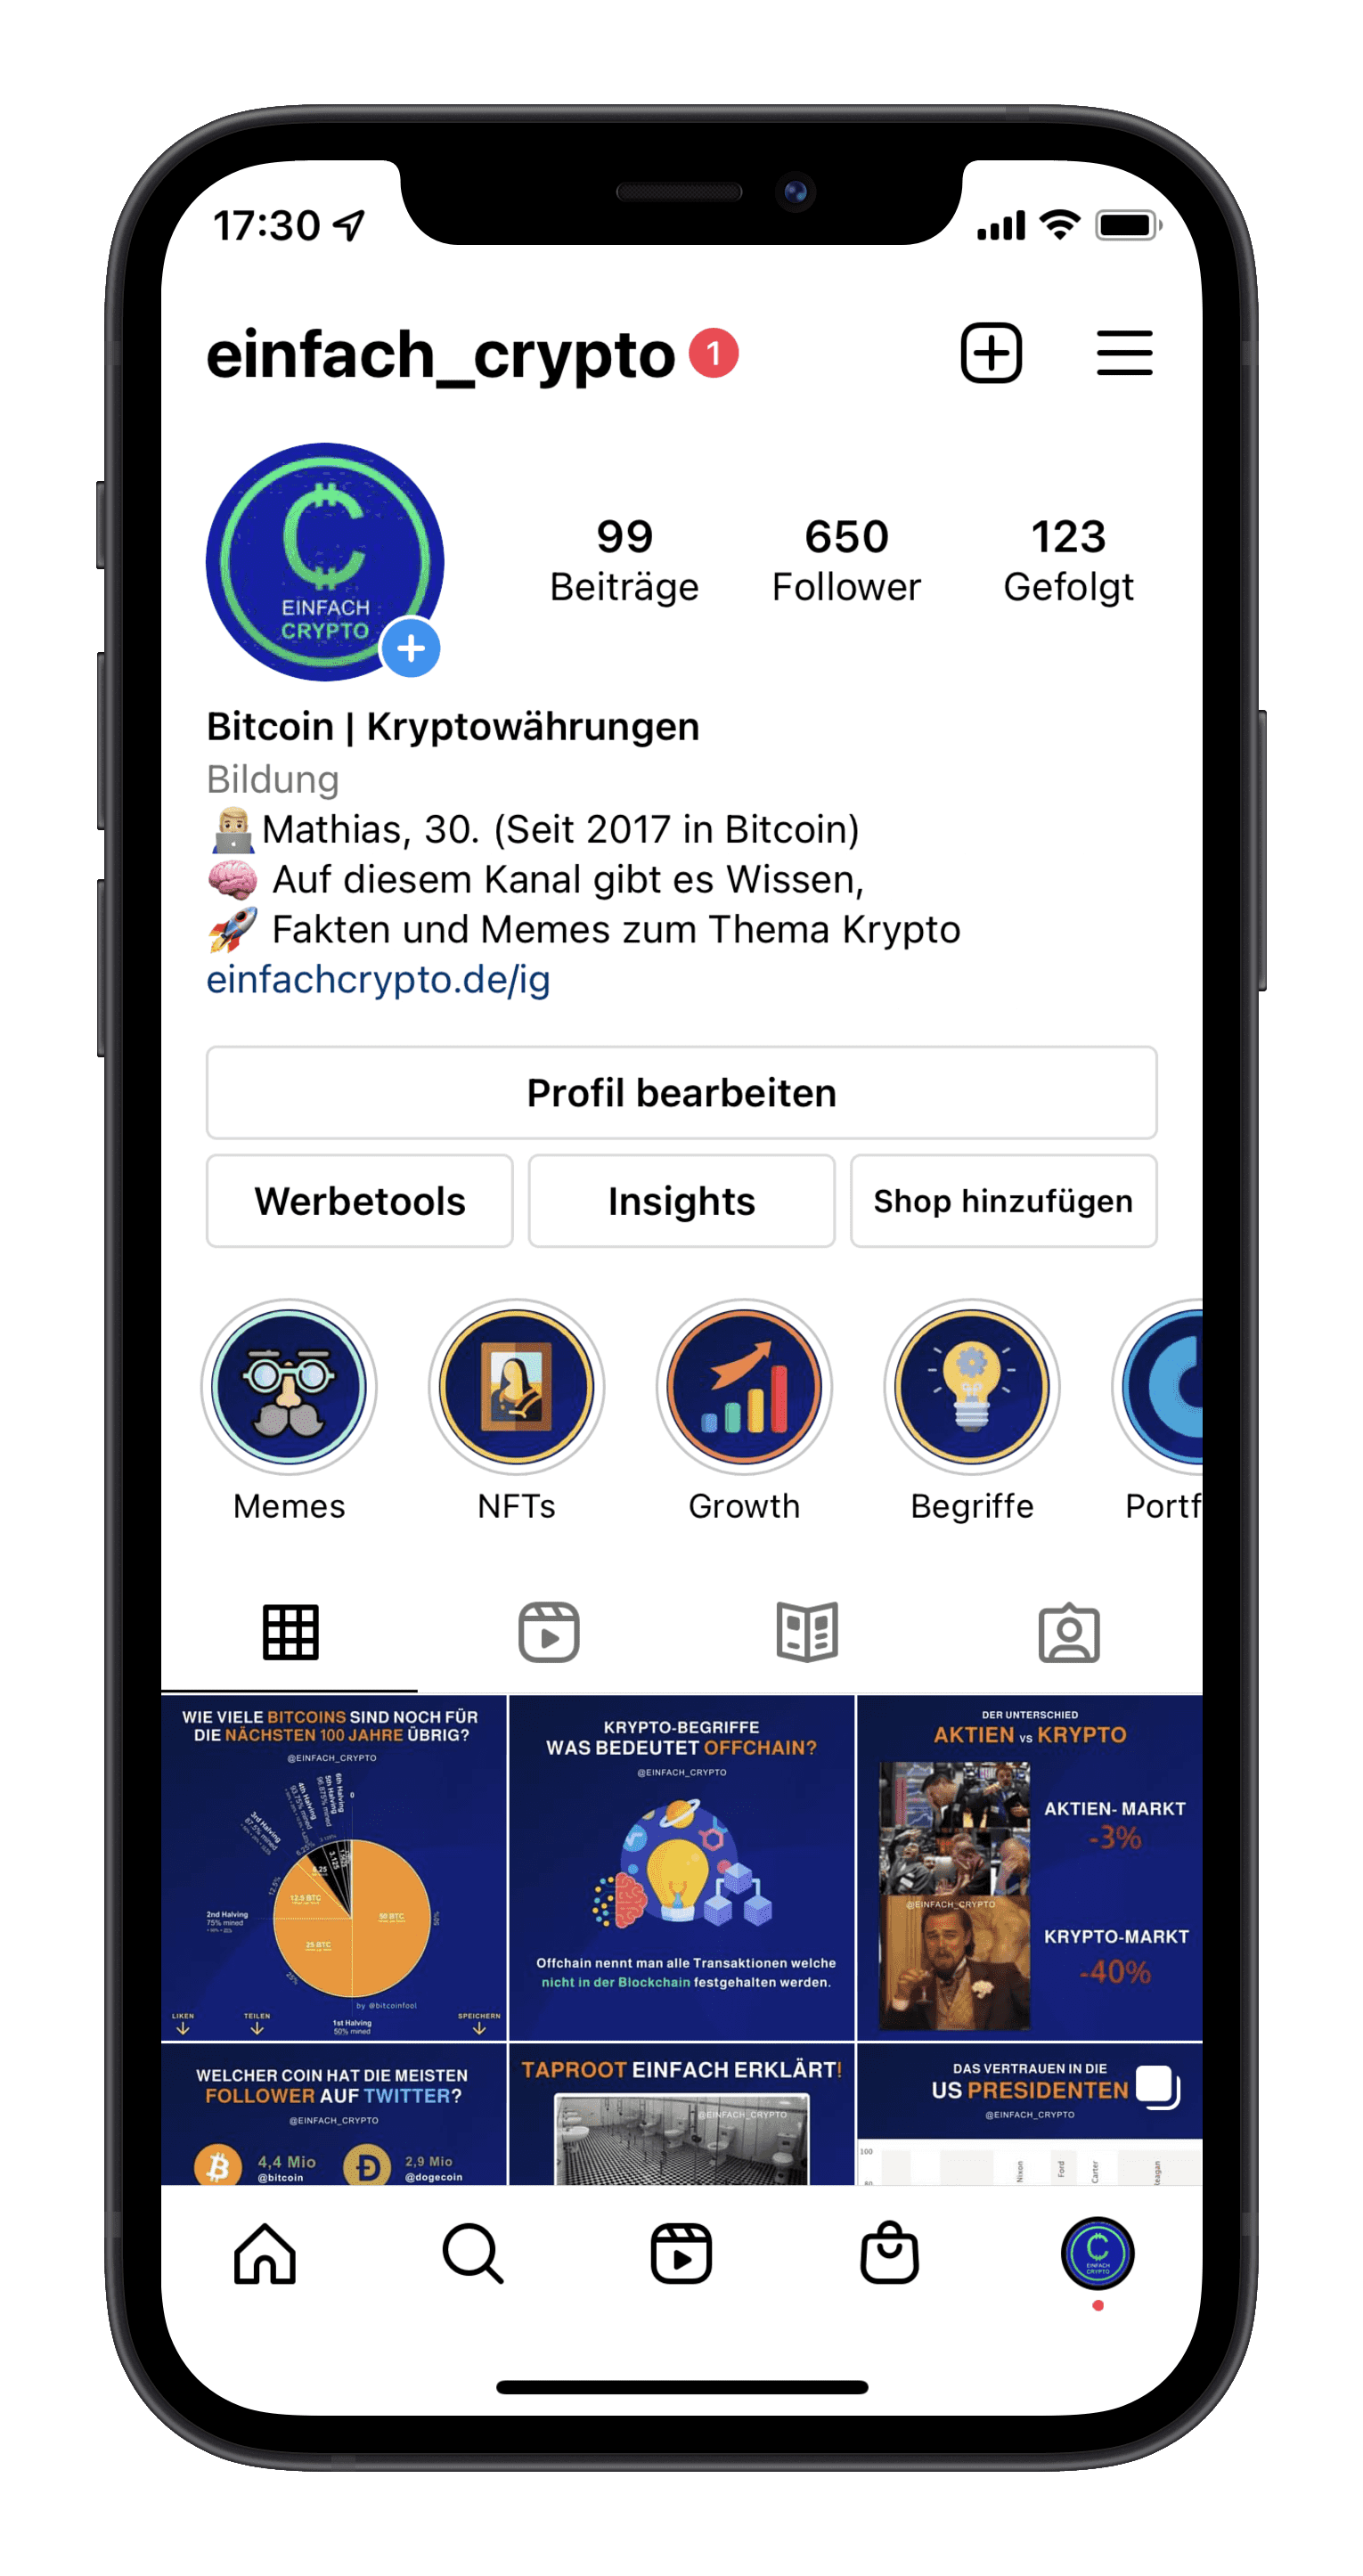 Einfach Crypto auf Instagram